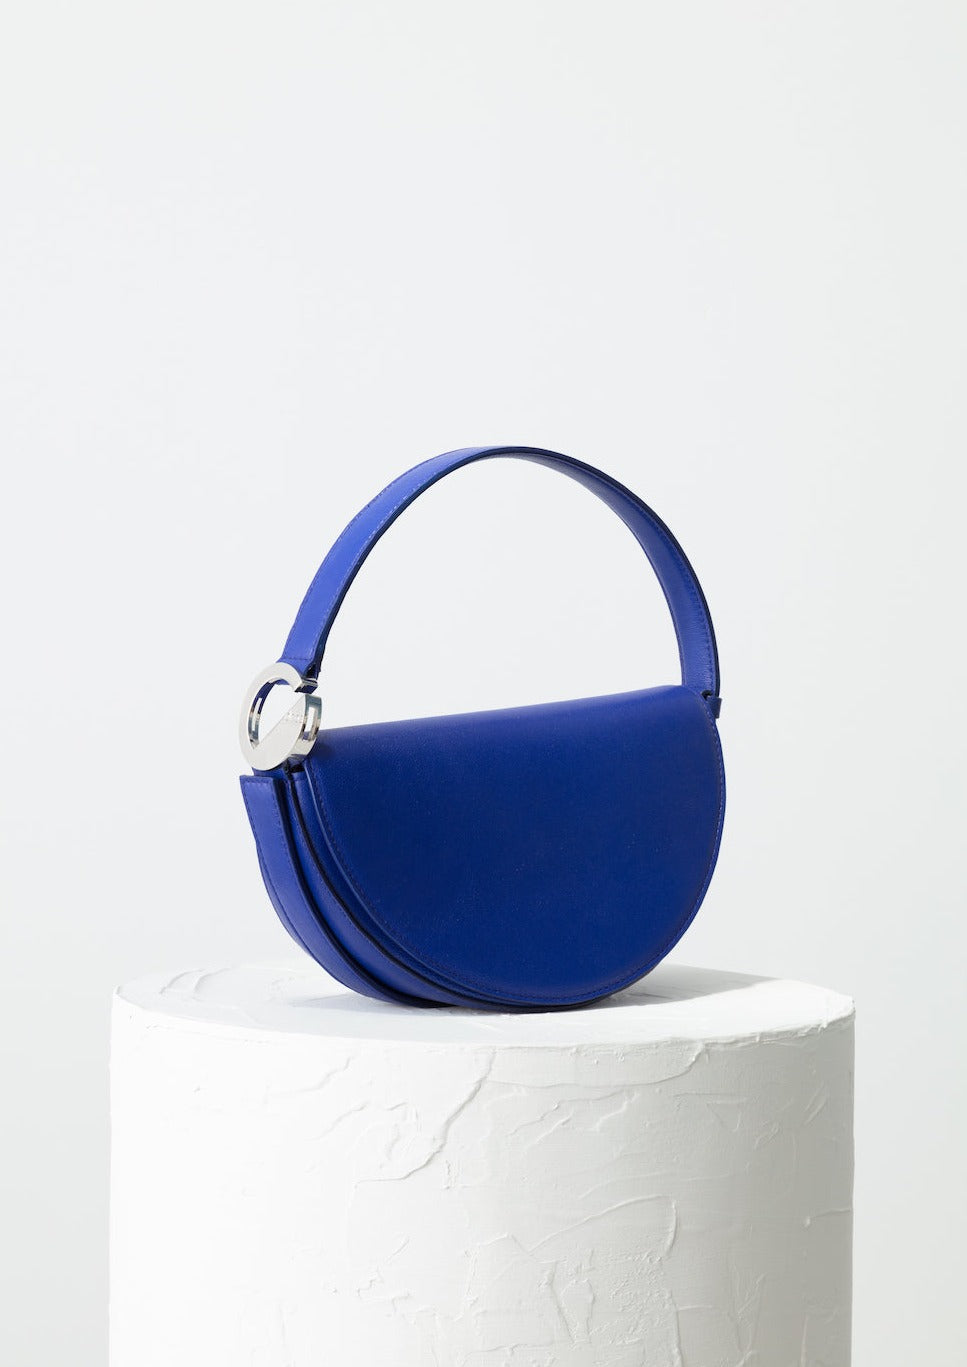 DOOZ Aquarius Celeste Bag - Blue